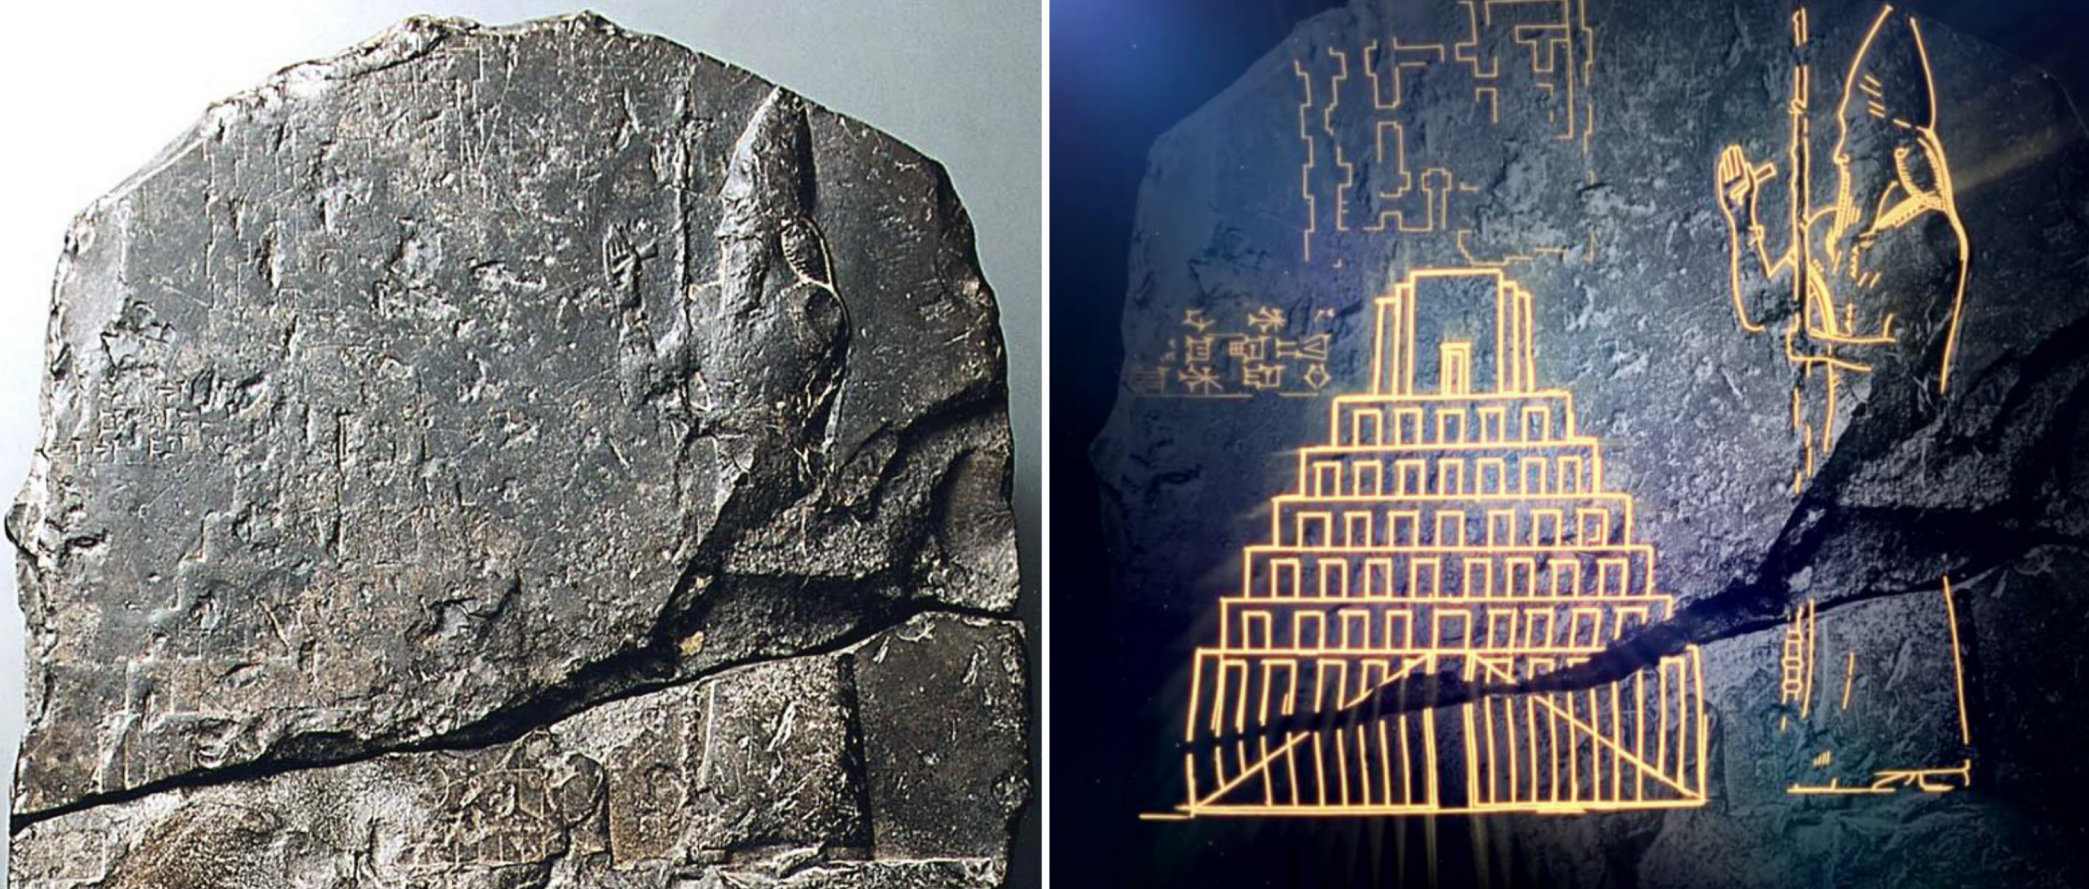 Prvi dokazi o biblijskem babilonskem stolpu so bili odkriti 3